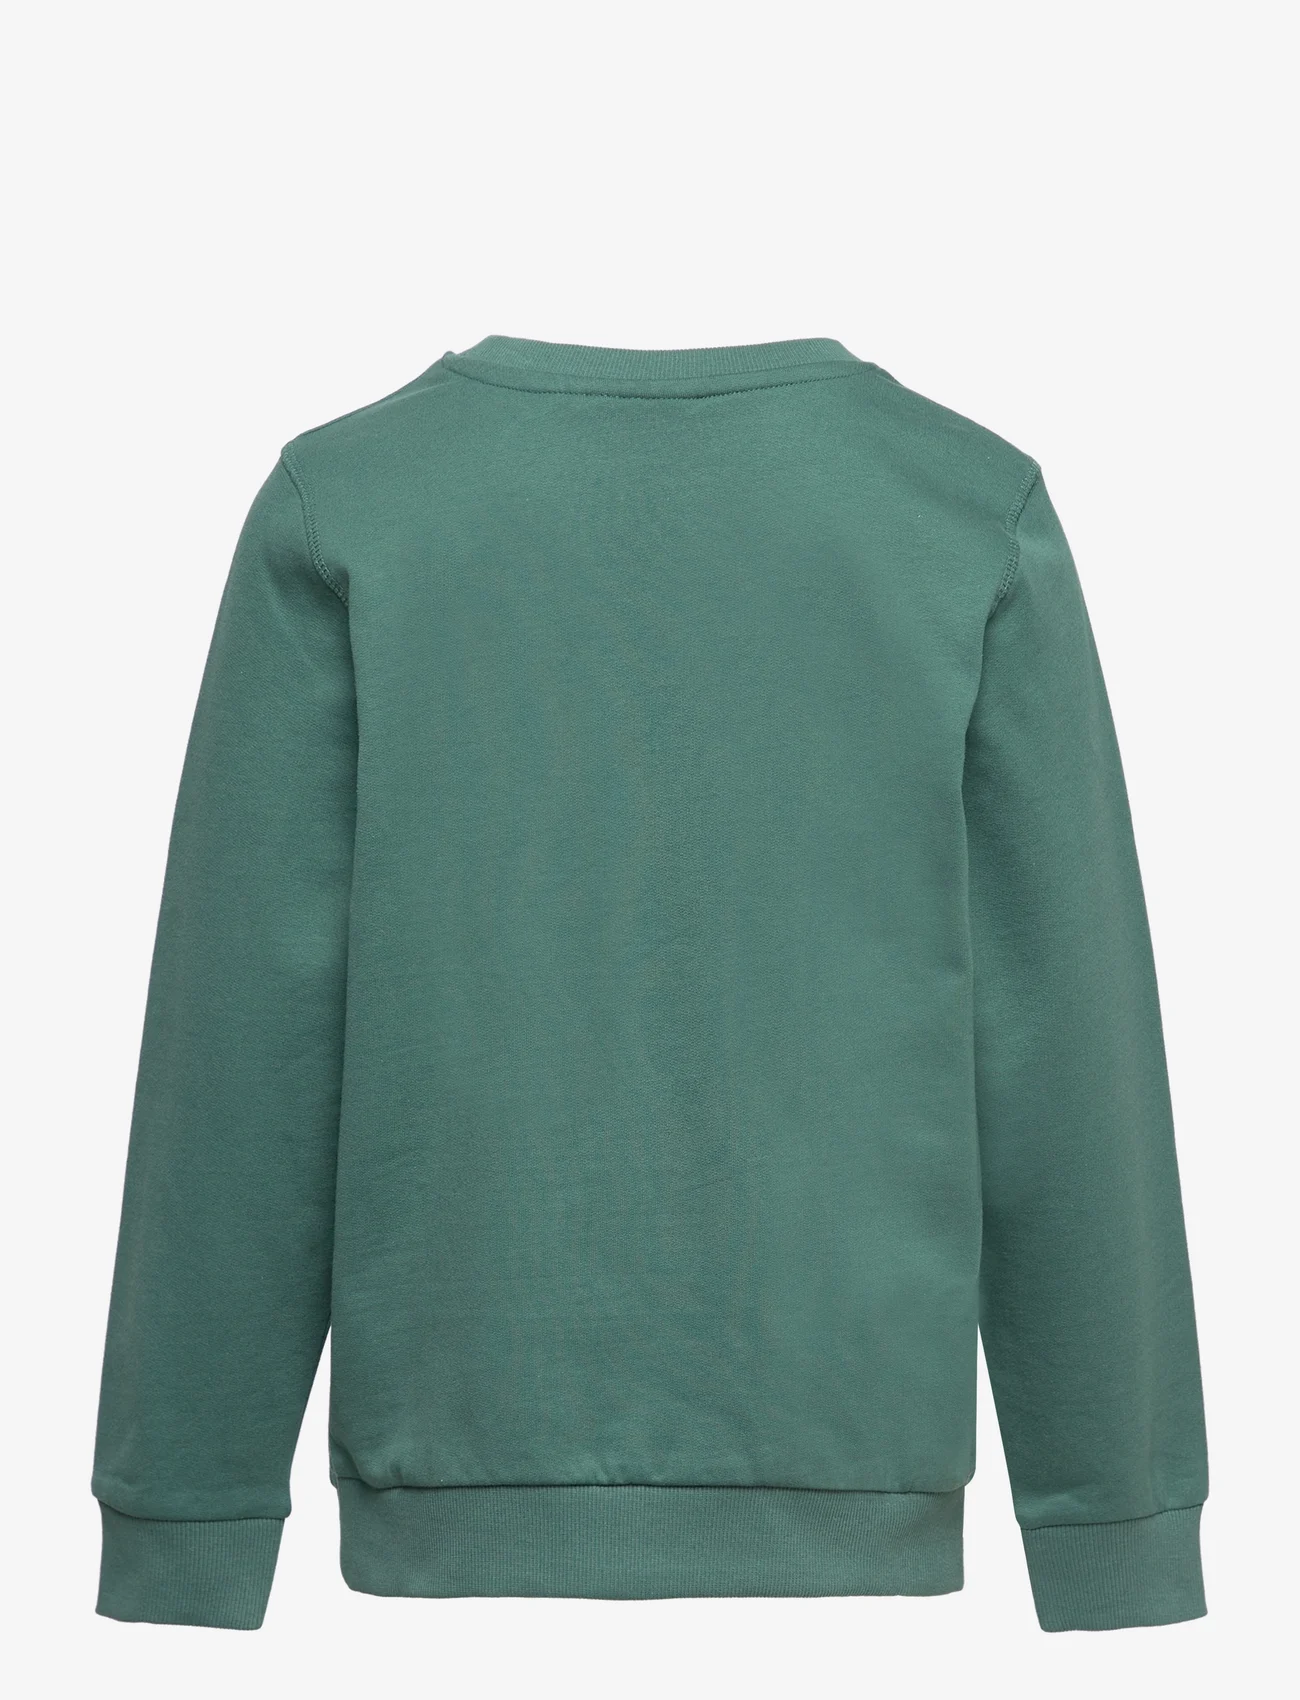 name it - NKMTEON LS SWE BRU PB - sweatshirts - mallard green - 1